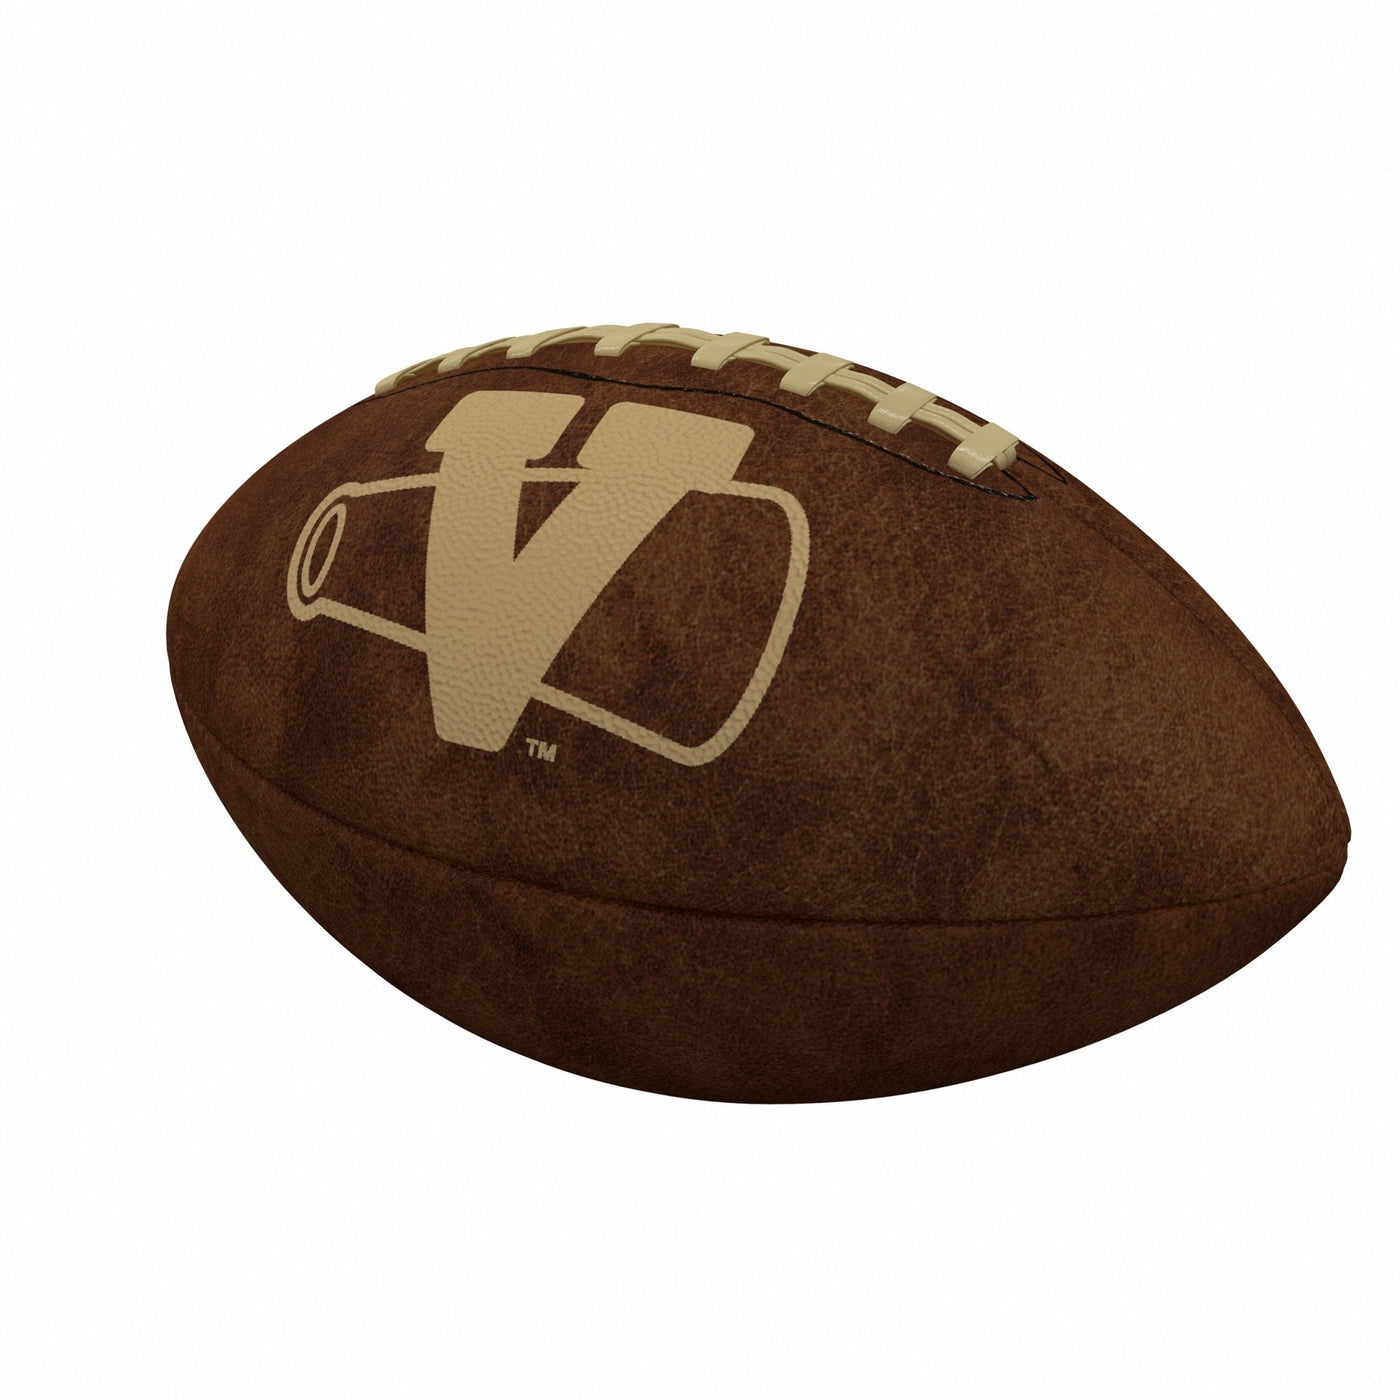 Vanderbilt Official-Size Vintage Football - Logo Brands